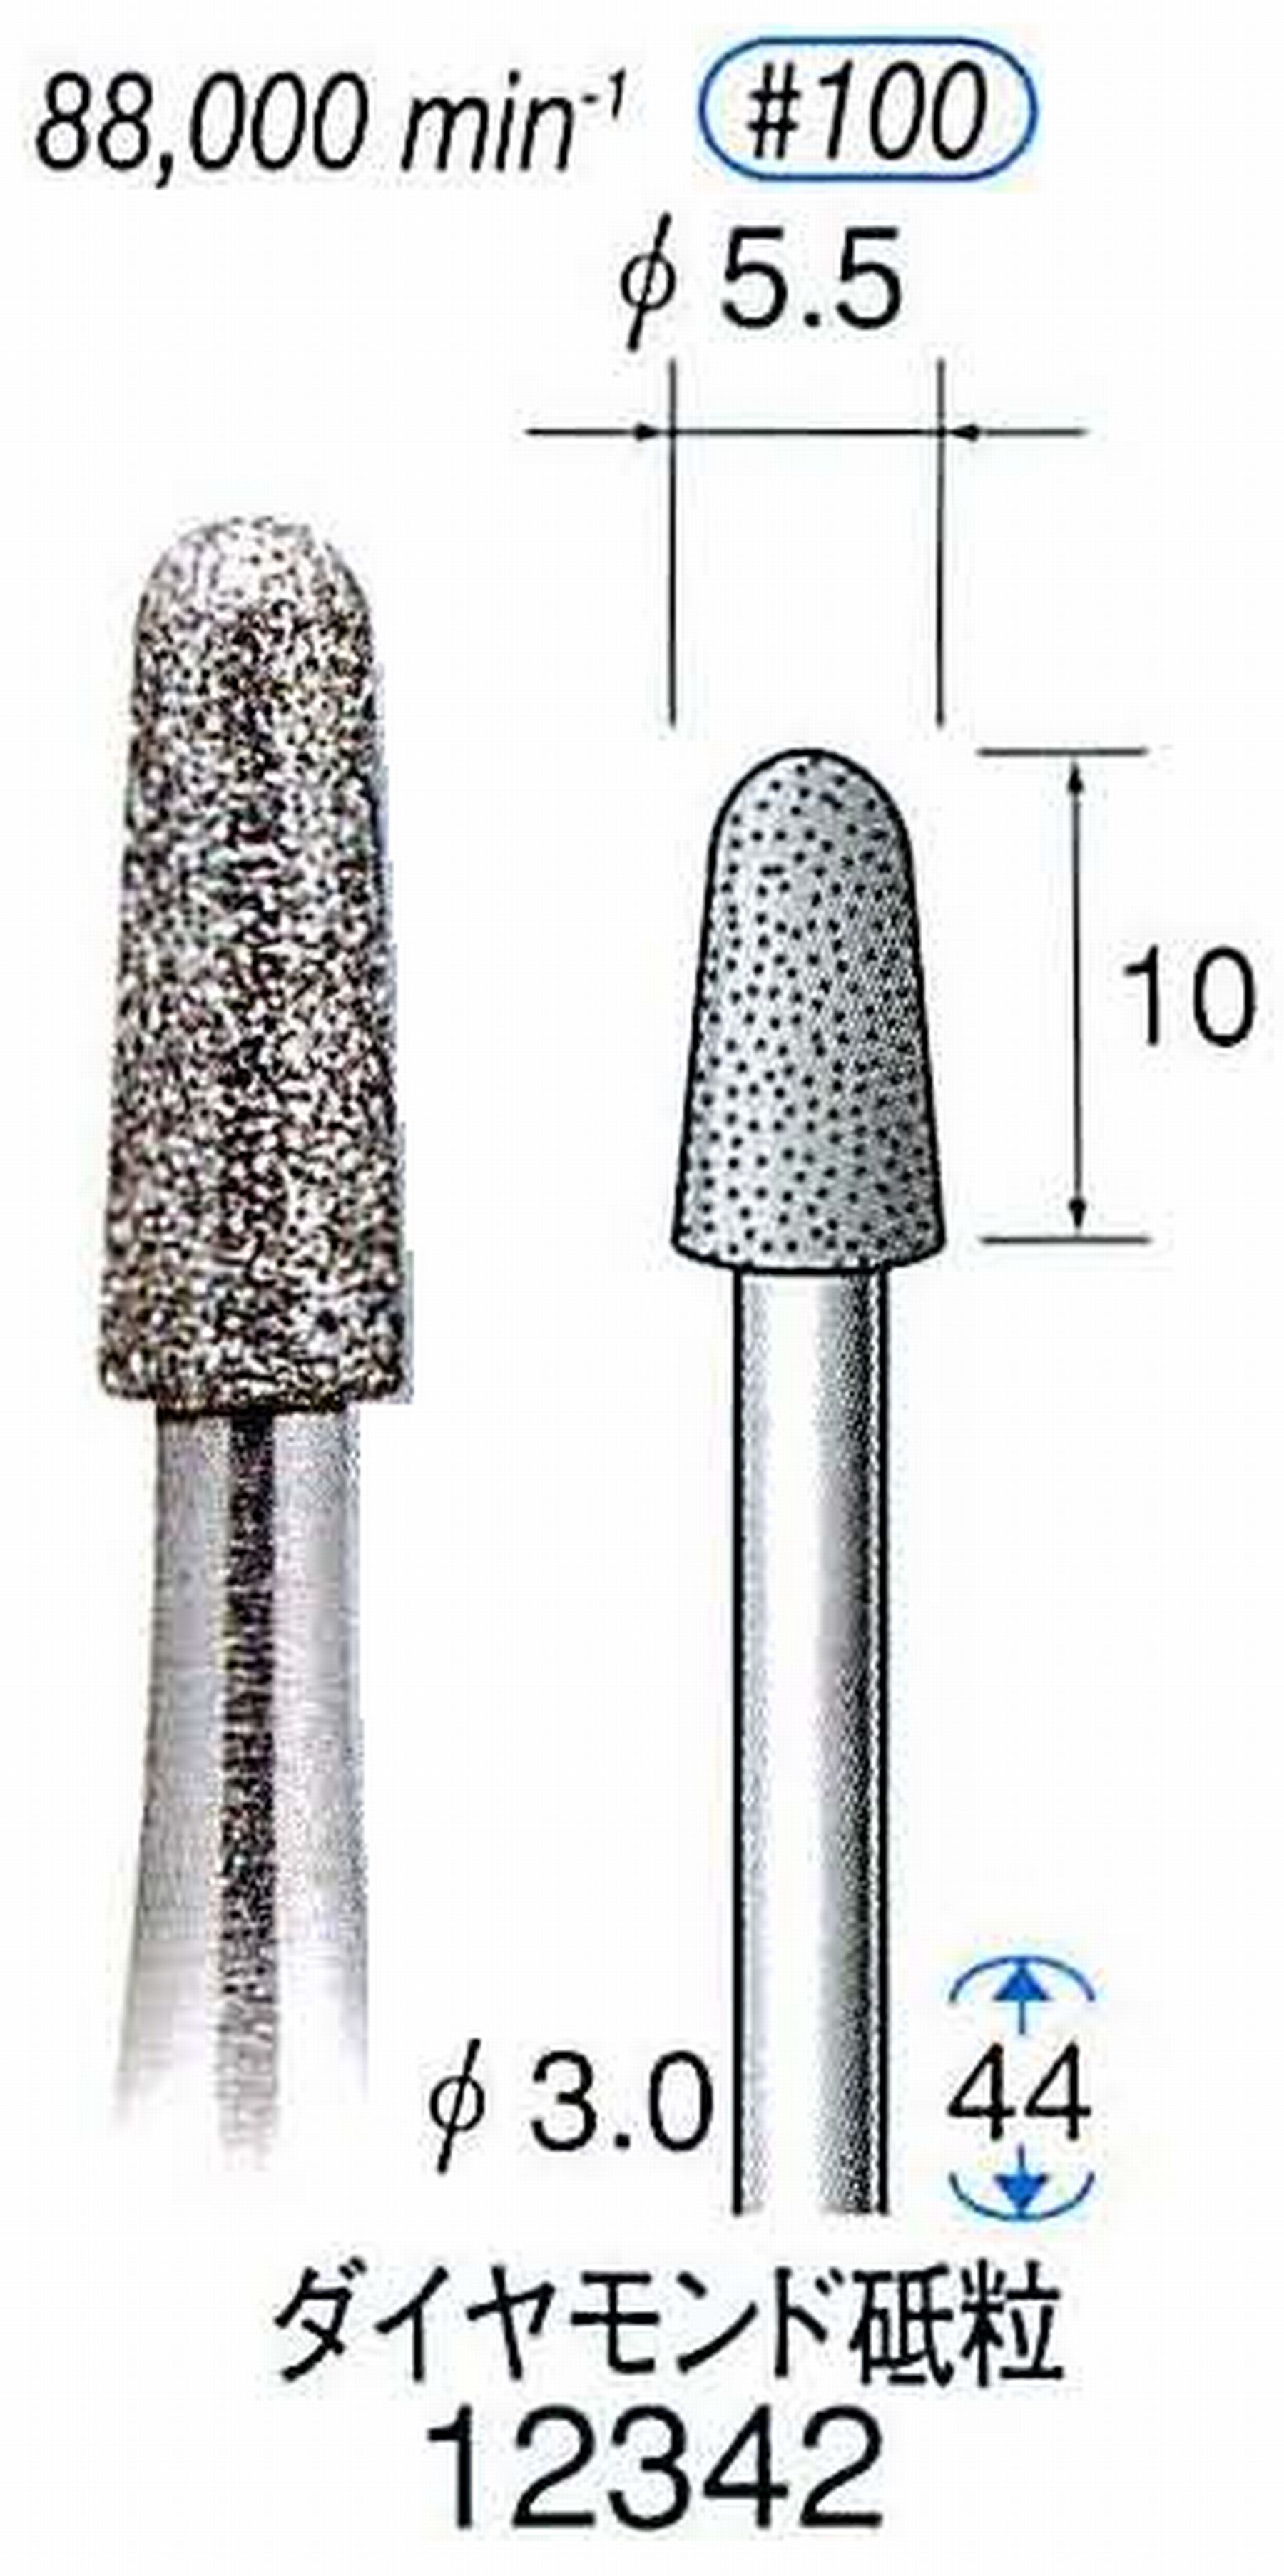 ナカニシ/NAKANISHI 電着ダイヤモンド ダイヤモンド砥粒 軸径(シャンク)φ3.0mm 12342